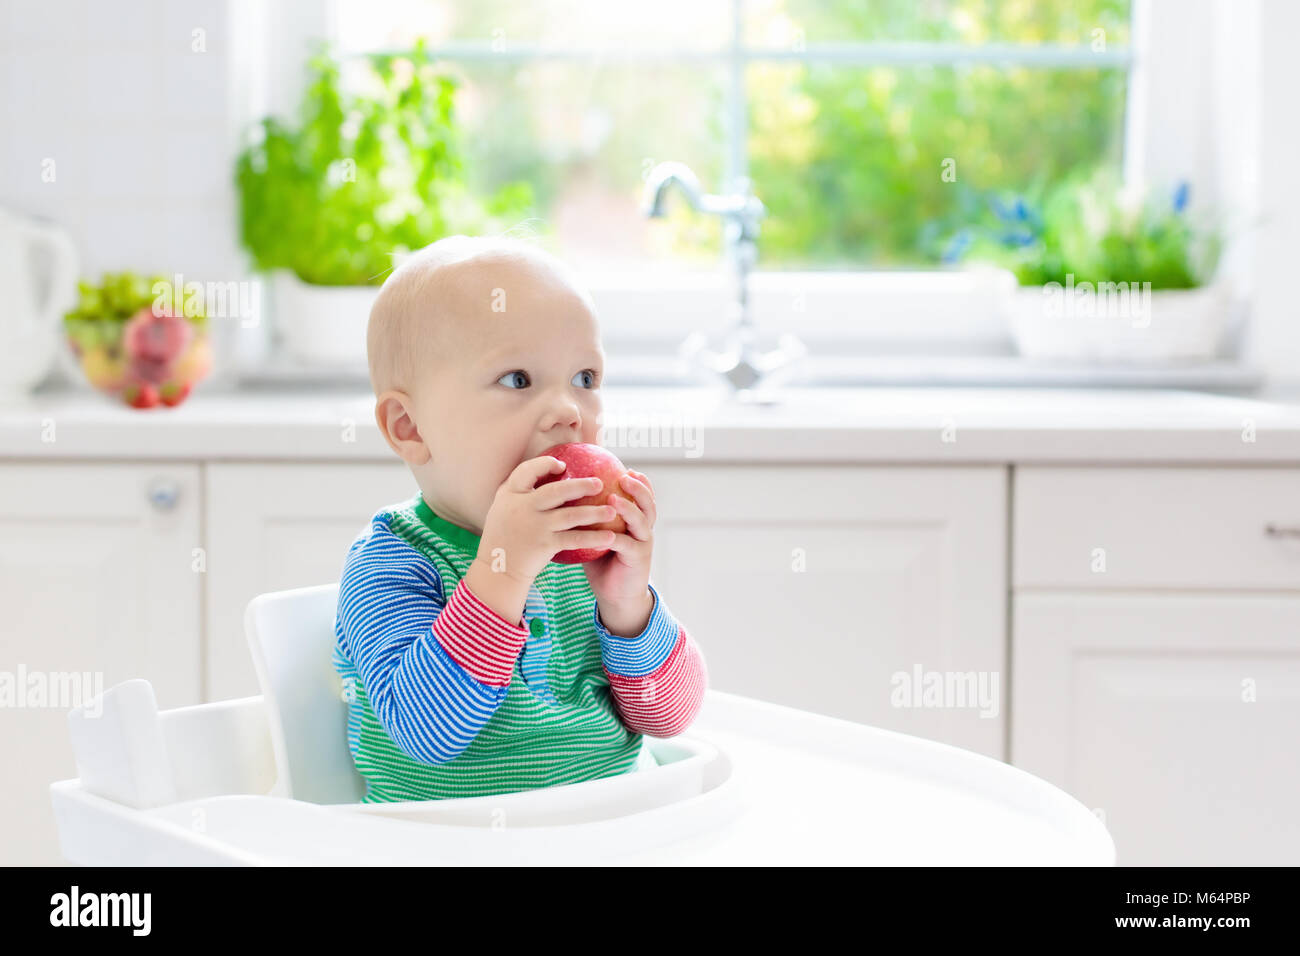 Baby Essen Obst. Kleiner Junge beißen Apfel sitzen in weißen Hochstuhl in sonnige Küche mit Fenster und Waschbecken. Gesunde Ernährung für Kinder. Feste Nahrung f Stockfoto